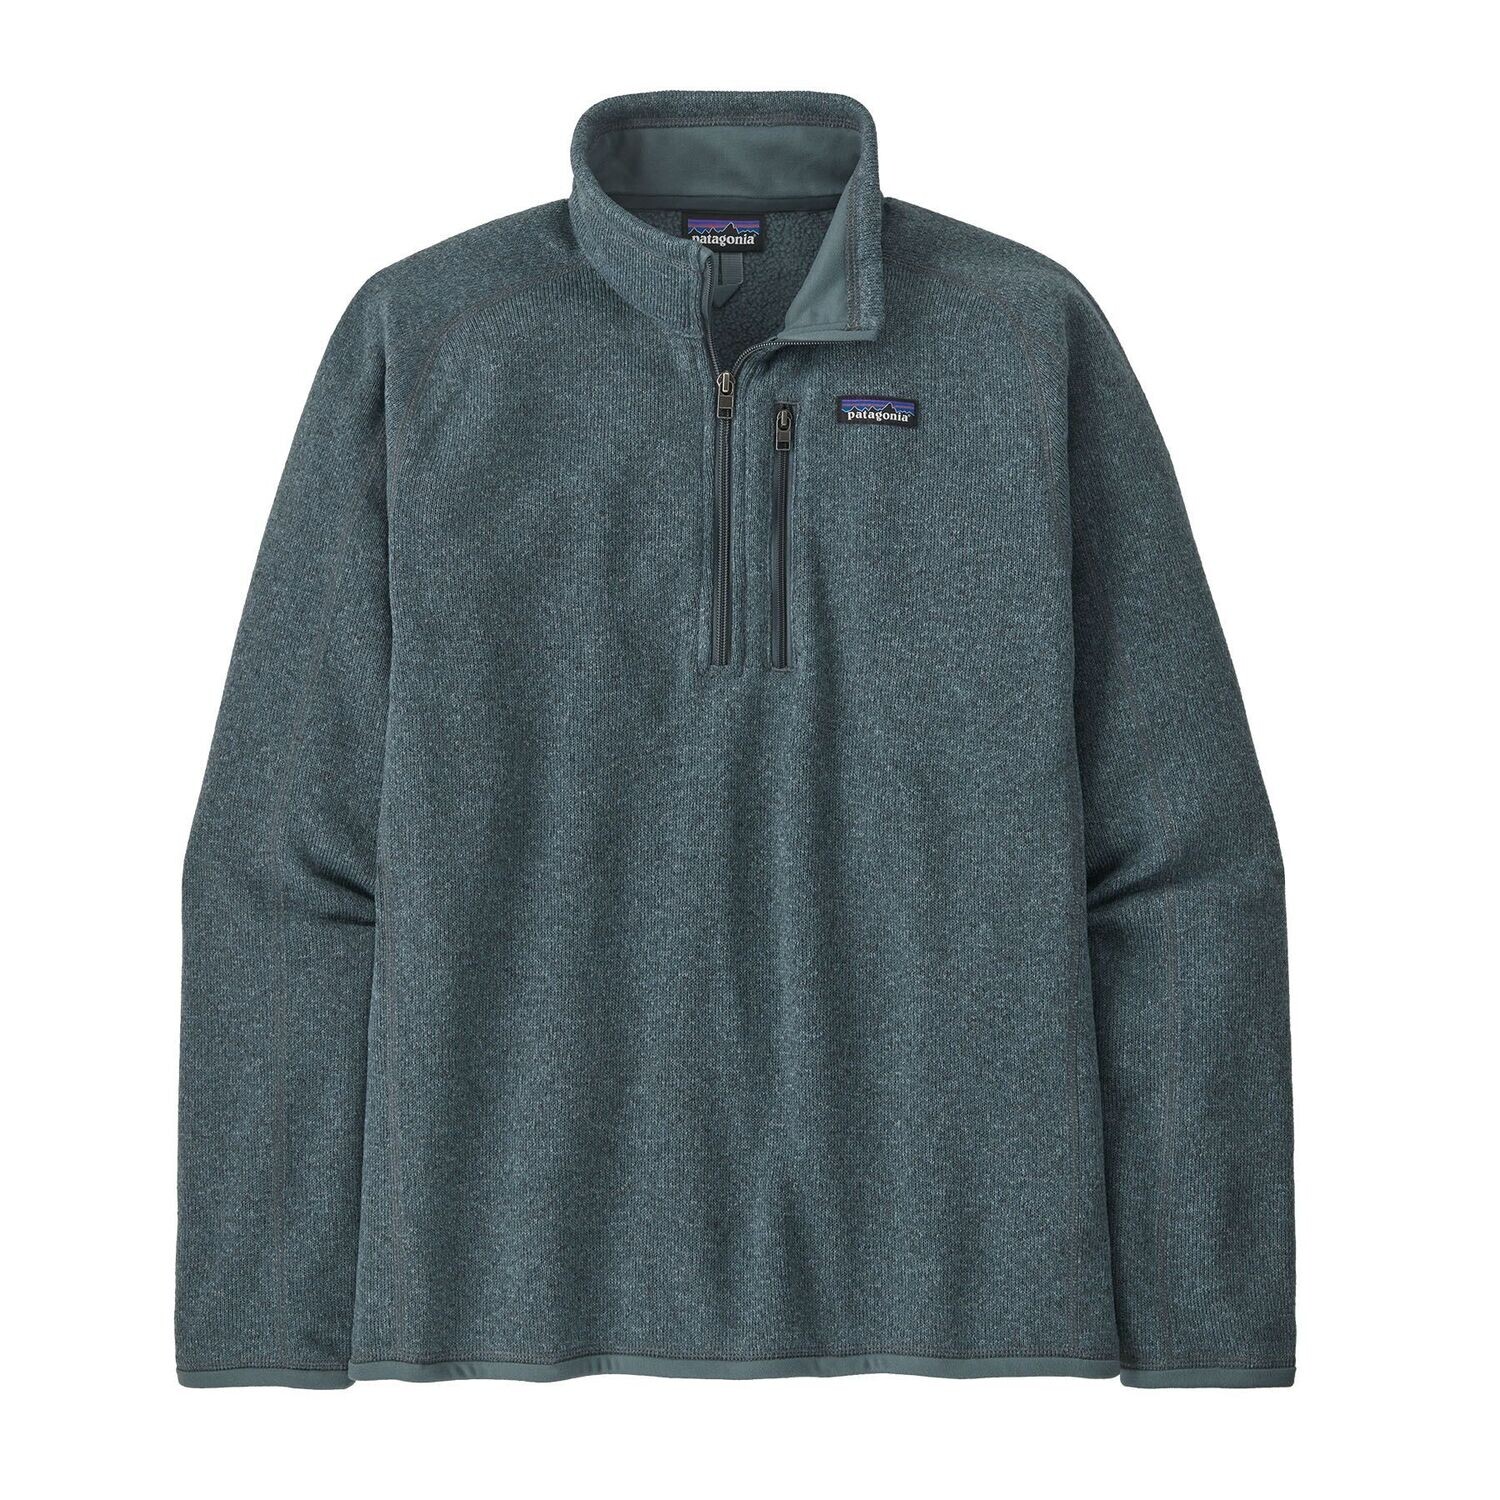 Patagonia Better Sweater 1/4 Zip Pullover Herren, Farbe: nouveau green, Größe: 2XL